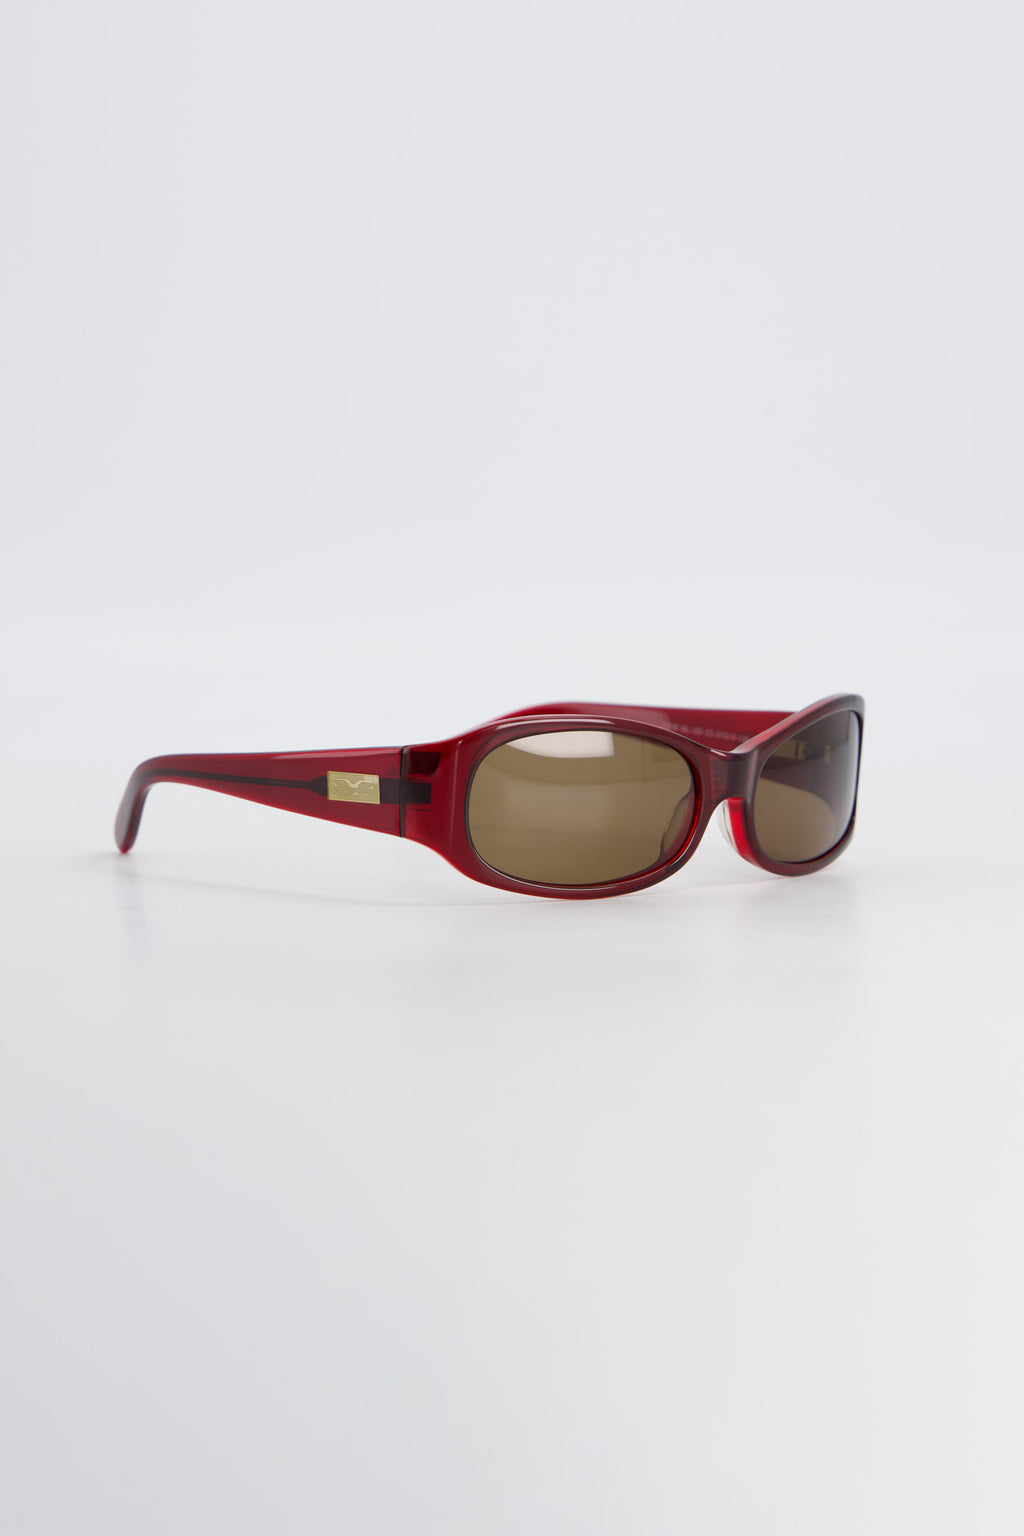 Marni Grey Clear Square Sunglasses, $480, SSENSE